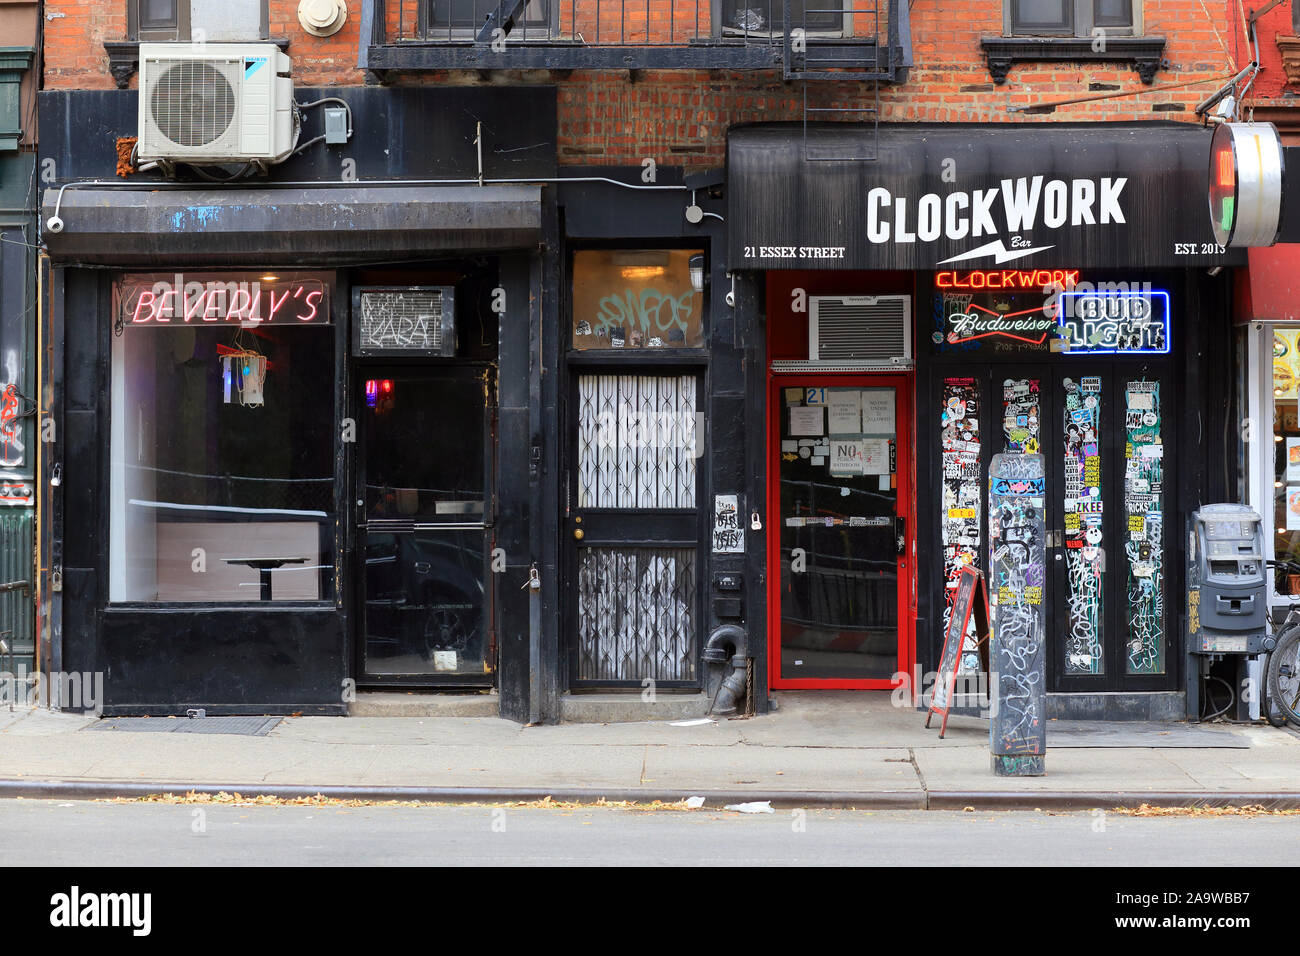 Beverly's, Uhrwerk, 21 Essex Street, New York, NY. aussen Schaufenster der lokalen Bars in der Lower East Side von Manhattan Stockfoto